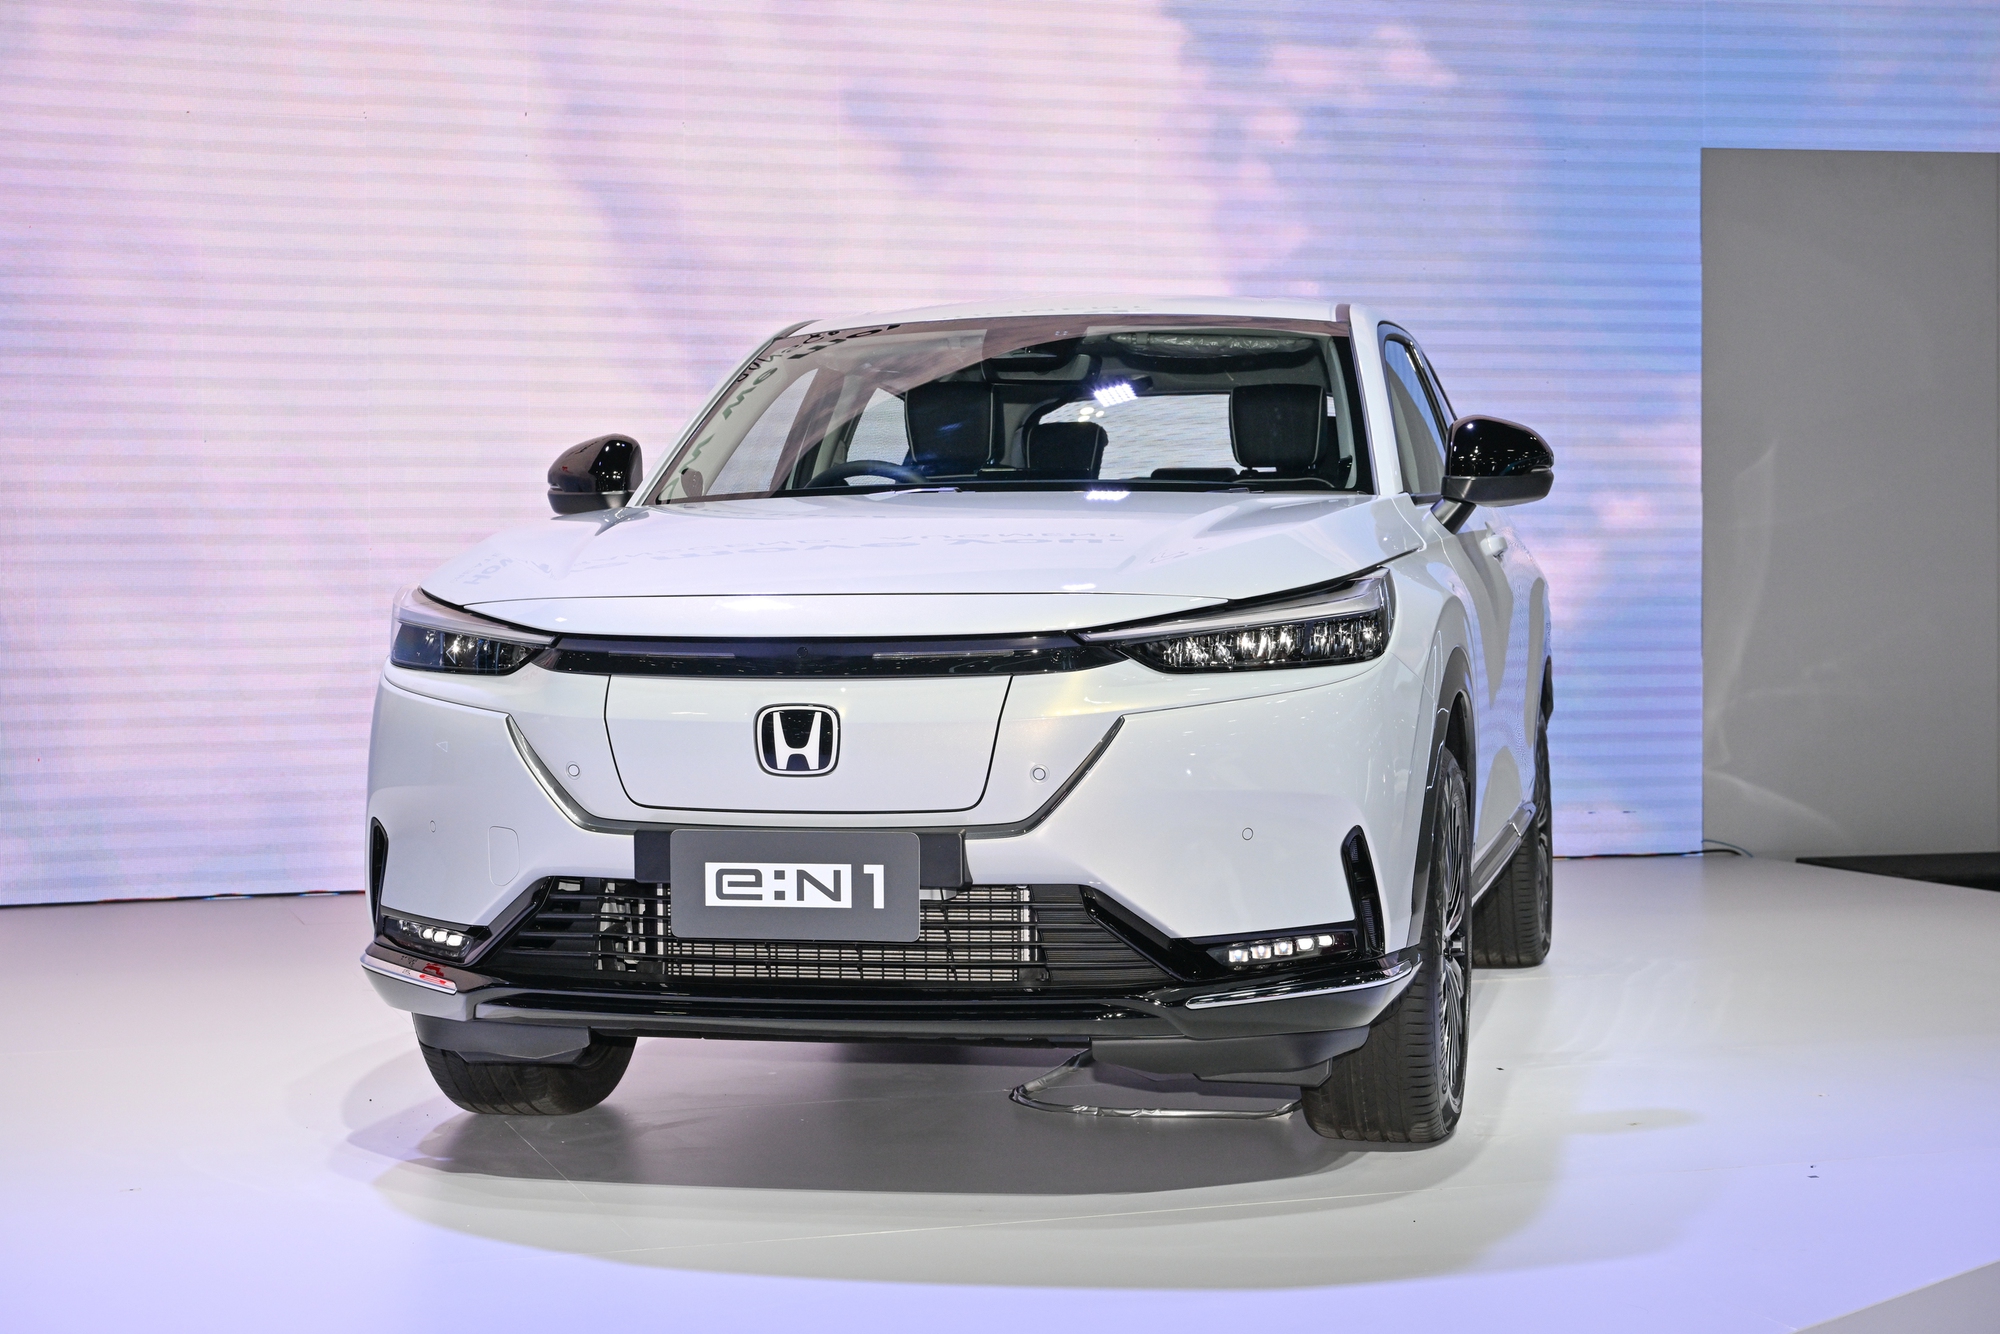 Chi tiết Honda HR-V thuần điện: Nhiều tiện nghi, một lần sạc đi được 500km, đi Hà Nội - Hạ Long rồi về vẫn thừa- Ảnh 2.